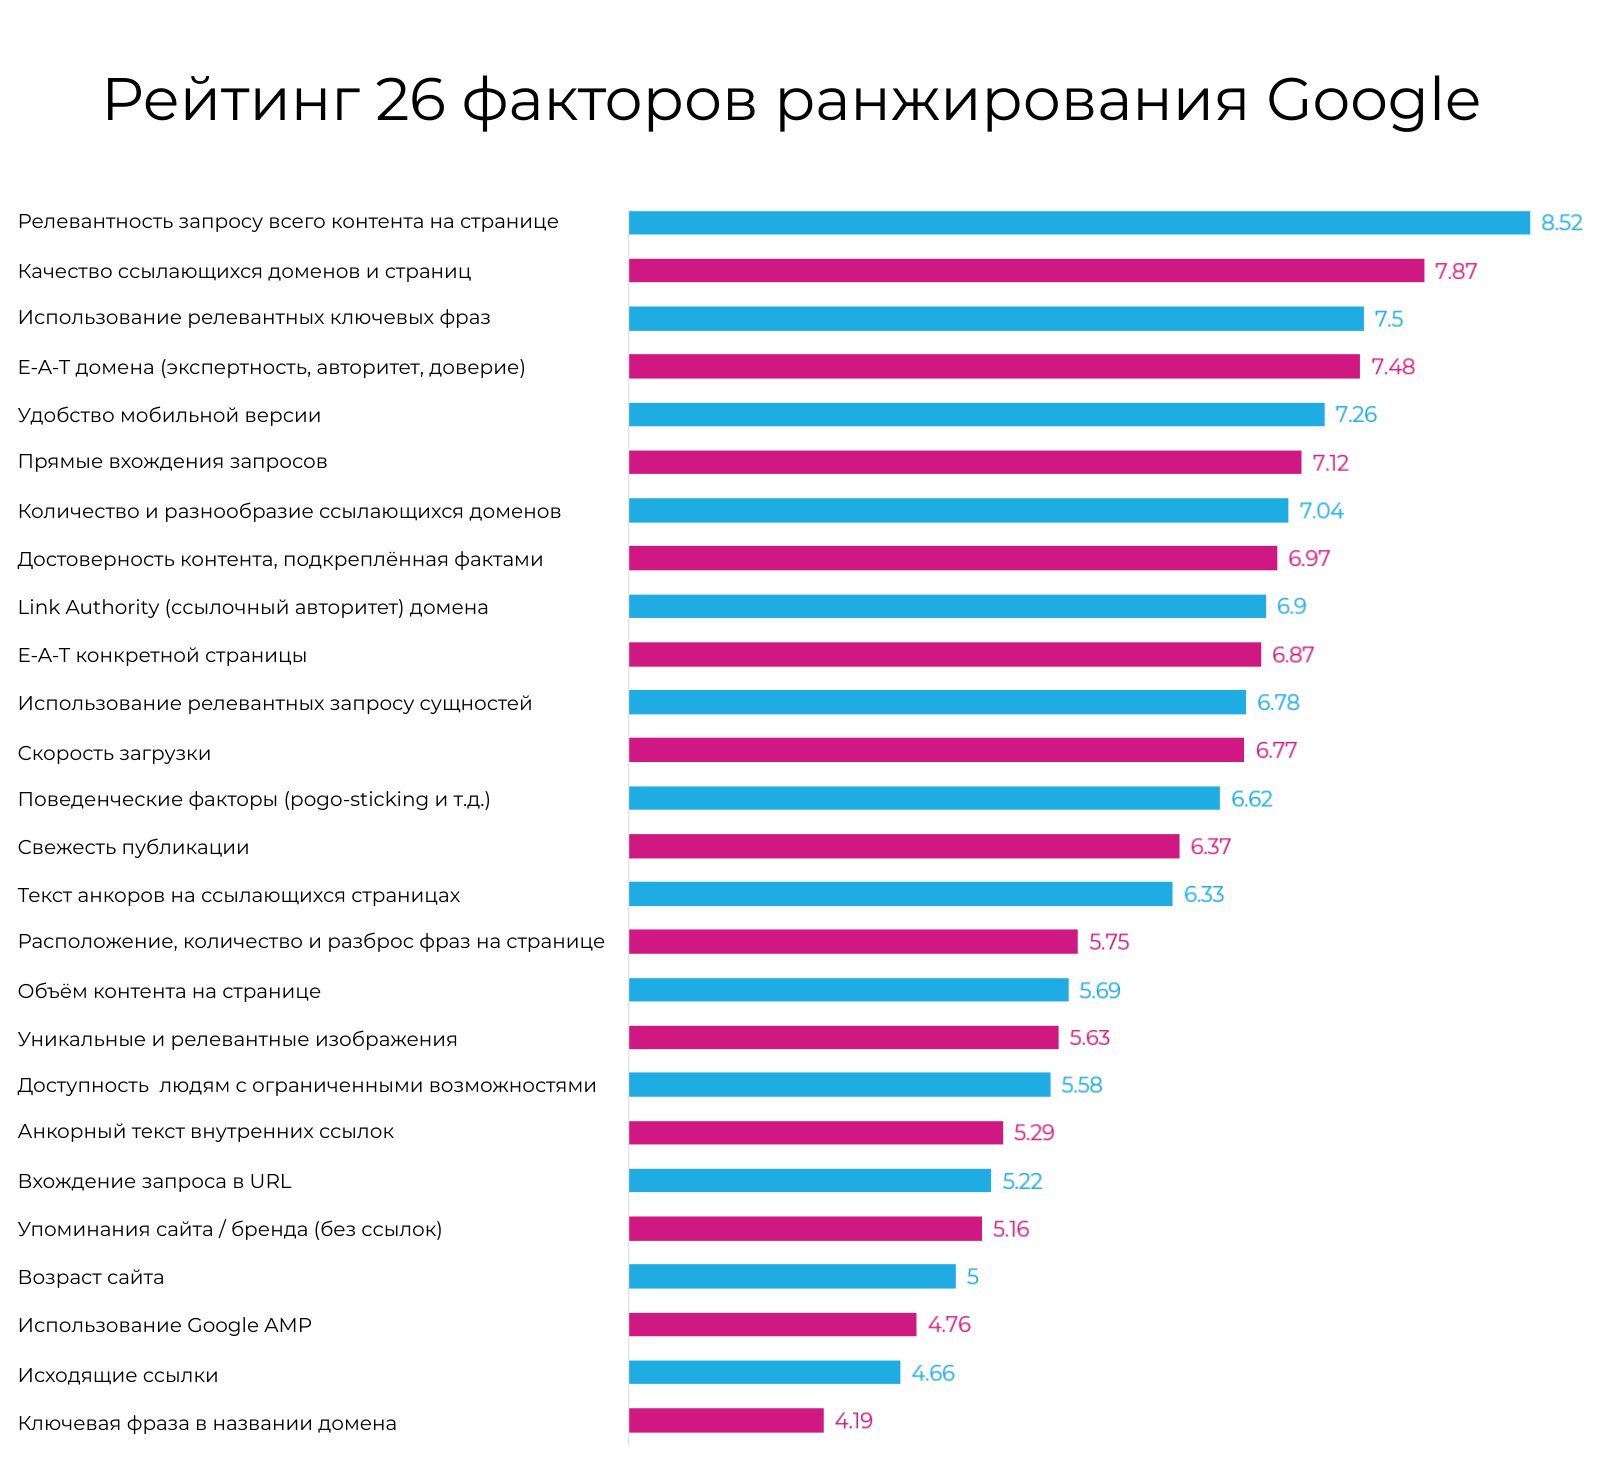 Рейтинг факторов ранжирования в Google ​